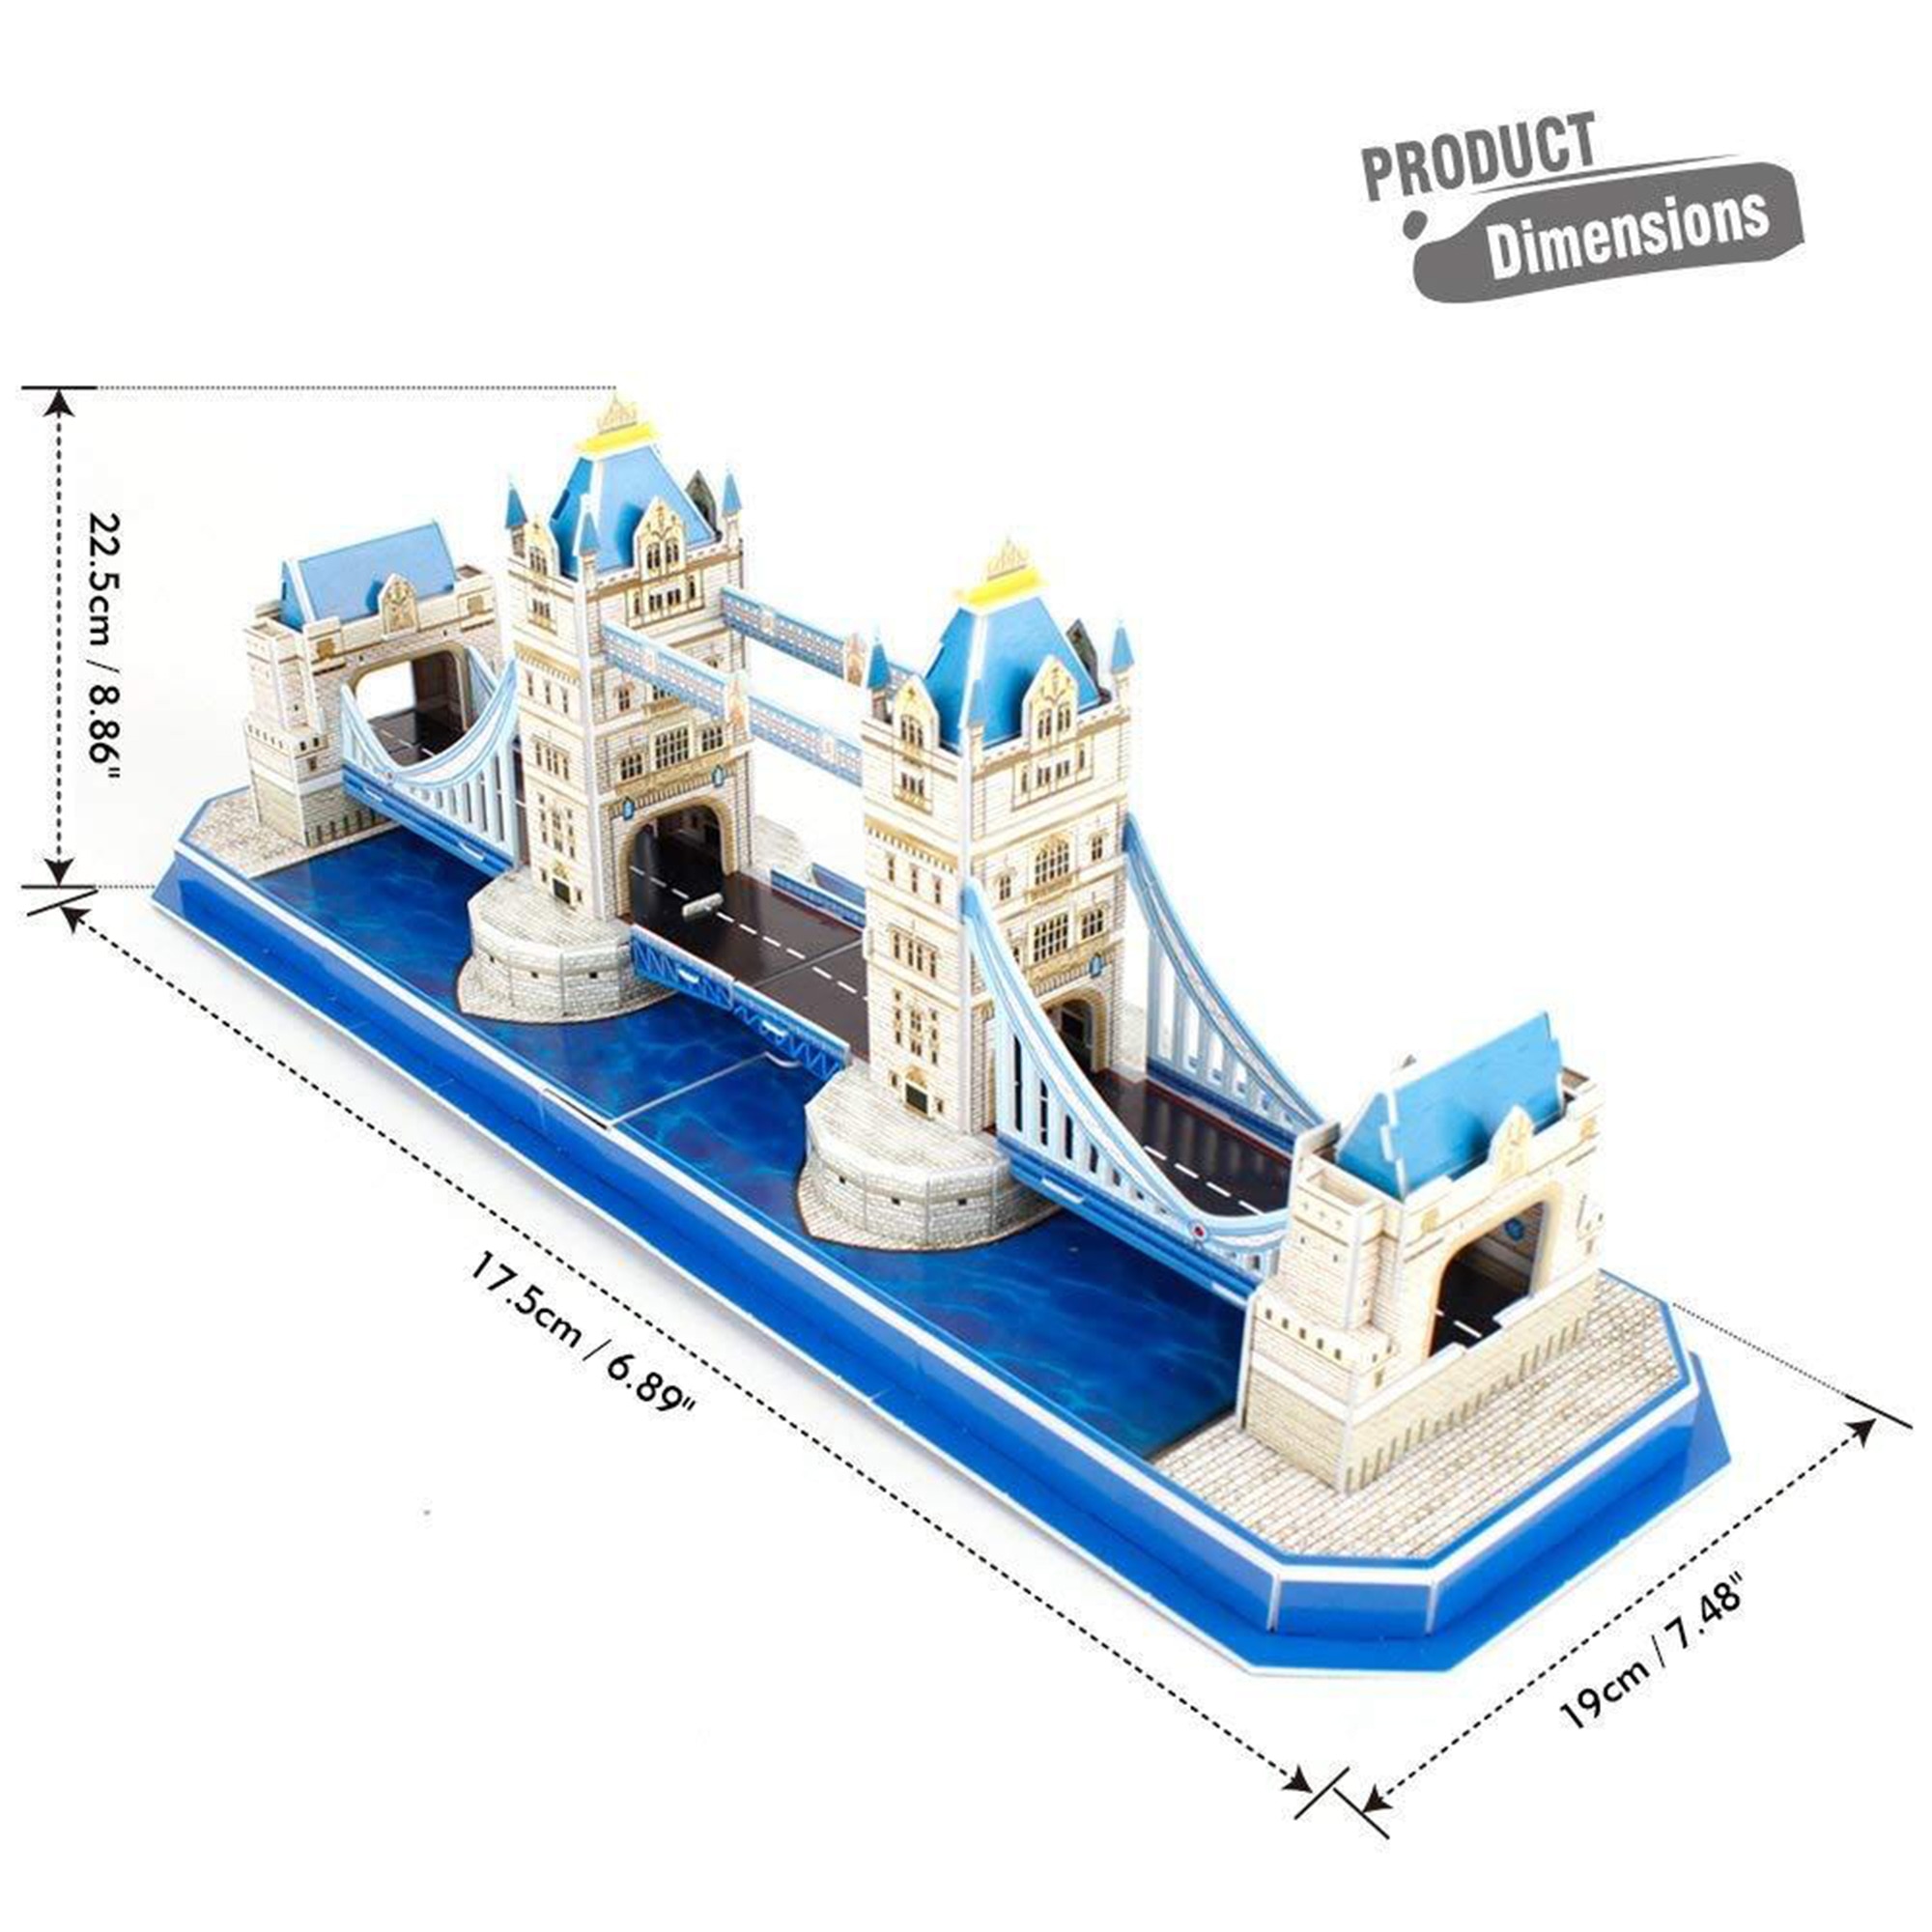 Puzzle 3D Tower Bridge 8+ 40 peças - Vinted